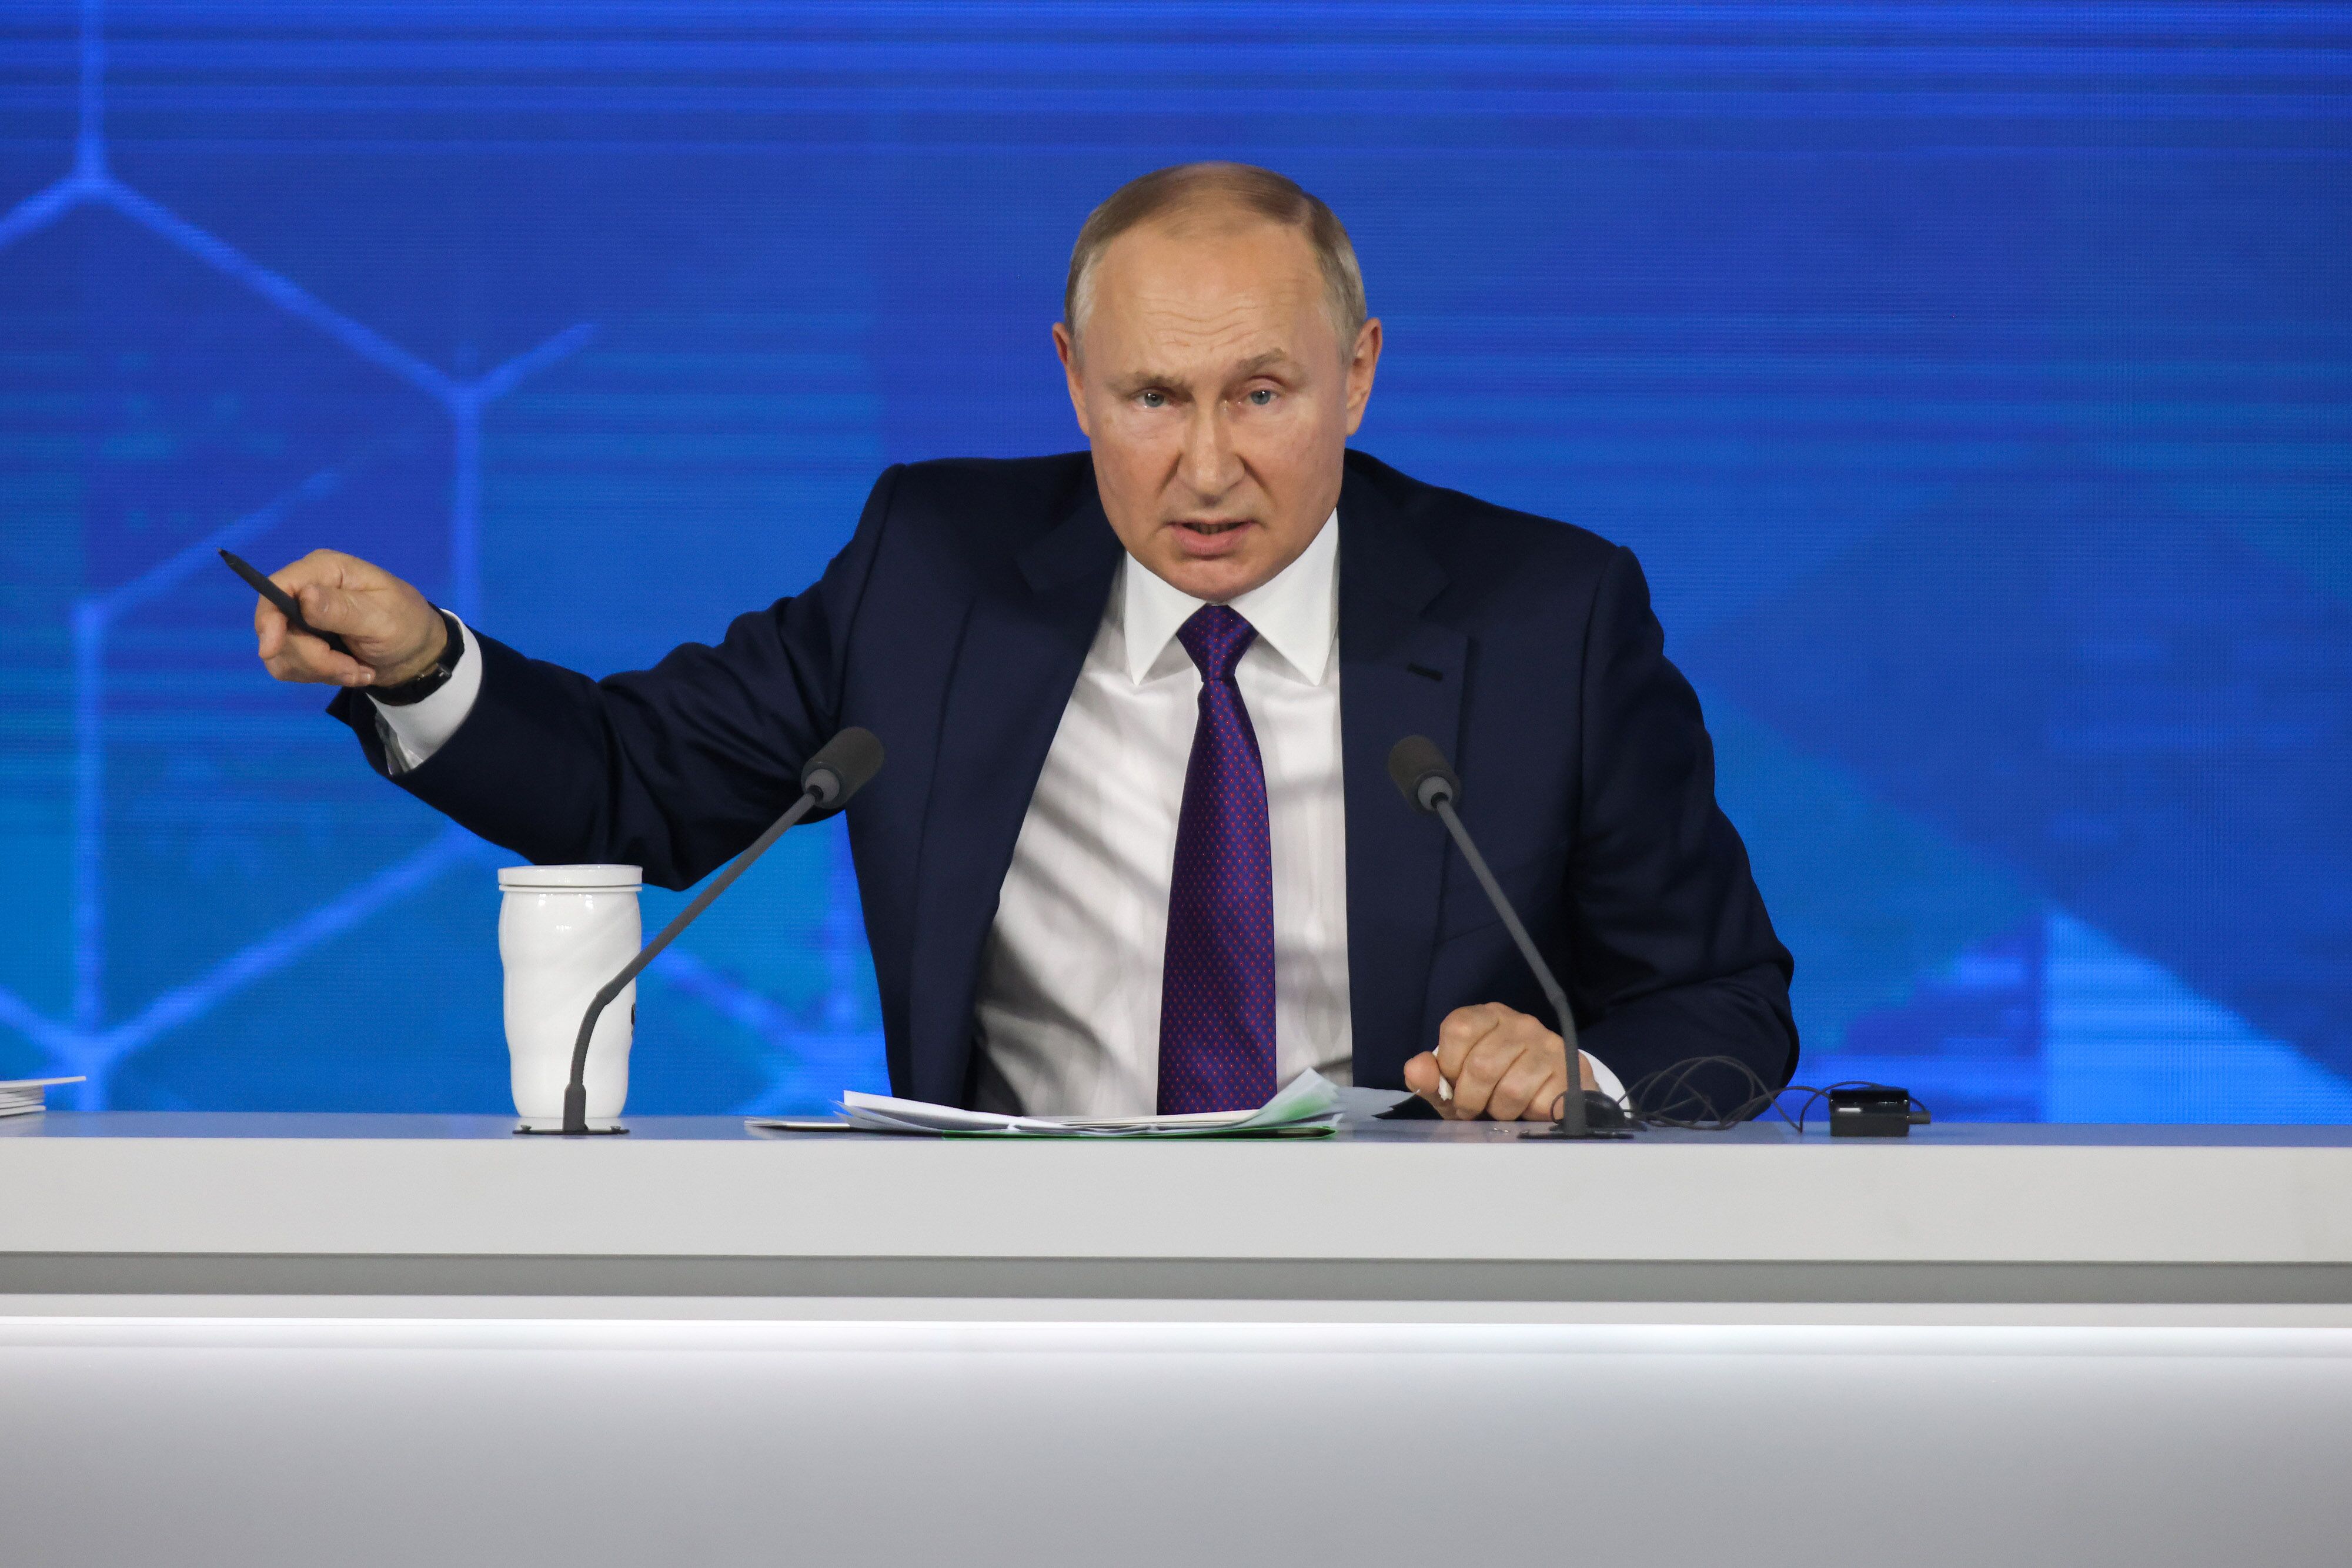 De chef de Putin a líder de uma rebelião que durou menos de 24